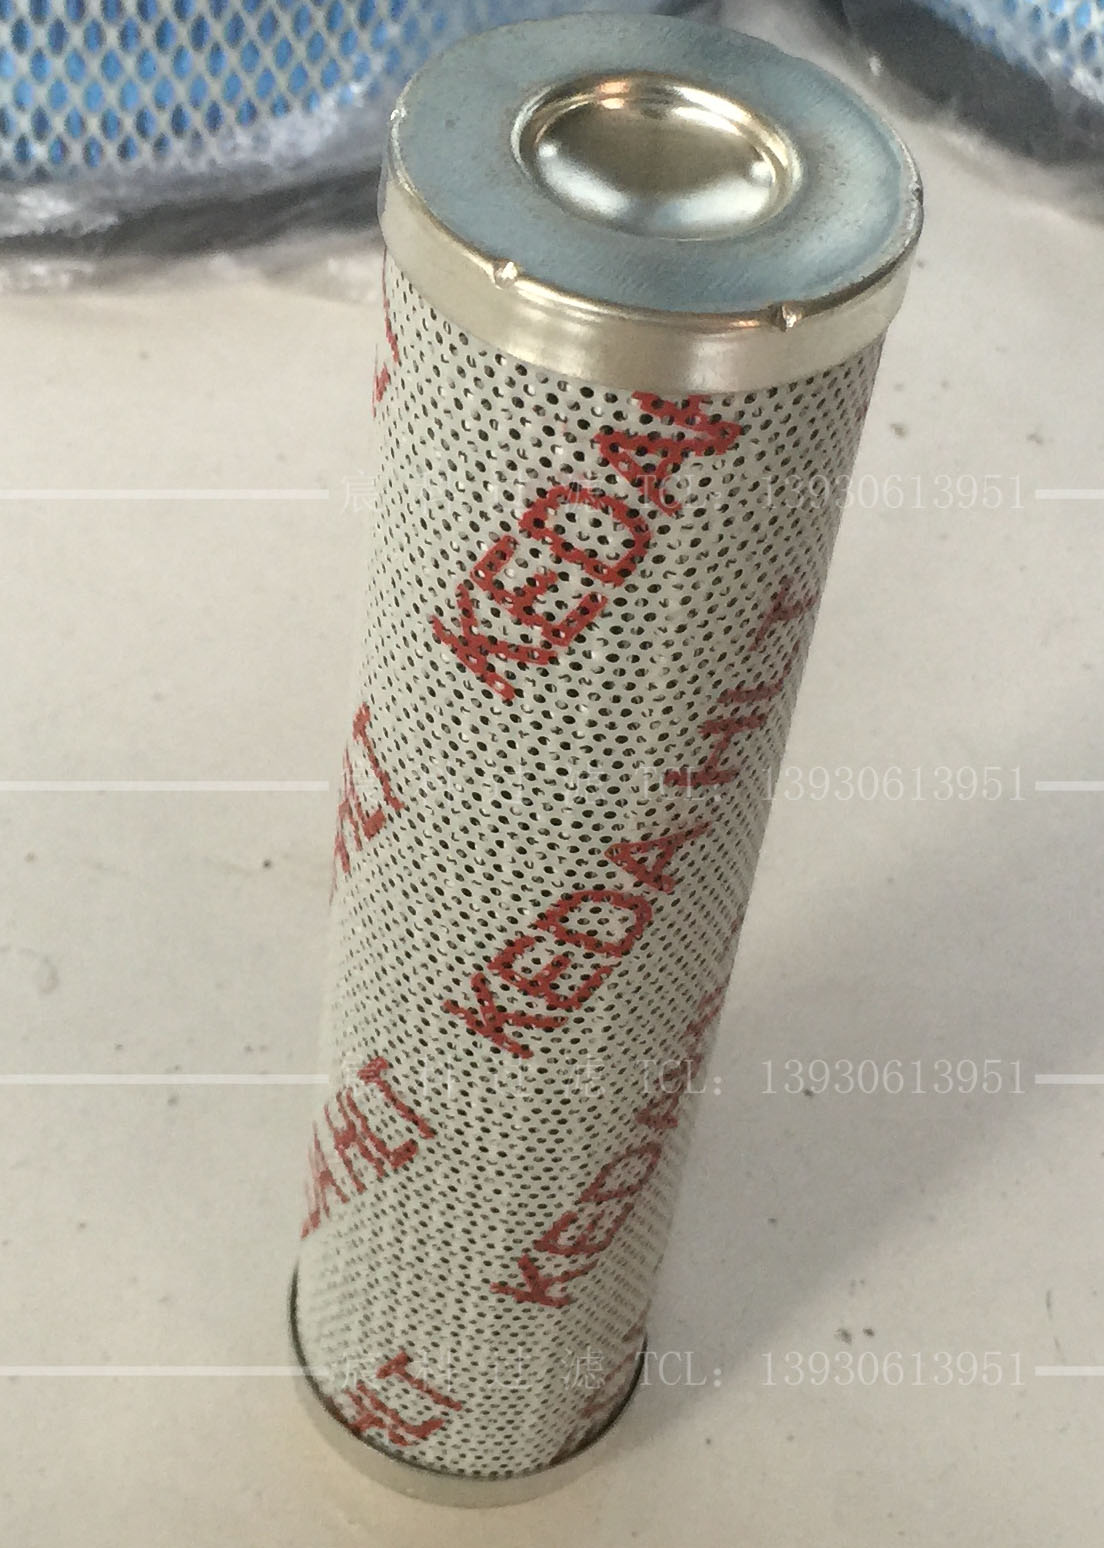 厂家直销雅歌液压滤芯V2.146-26